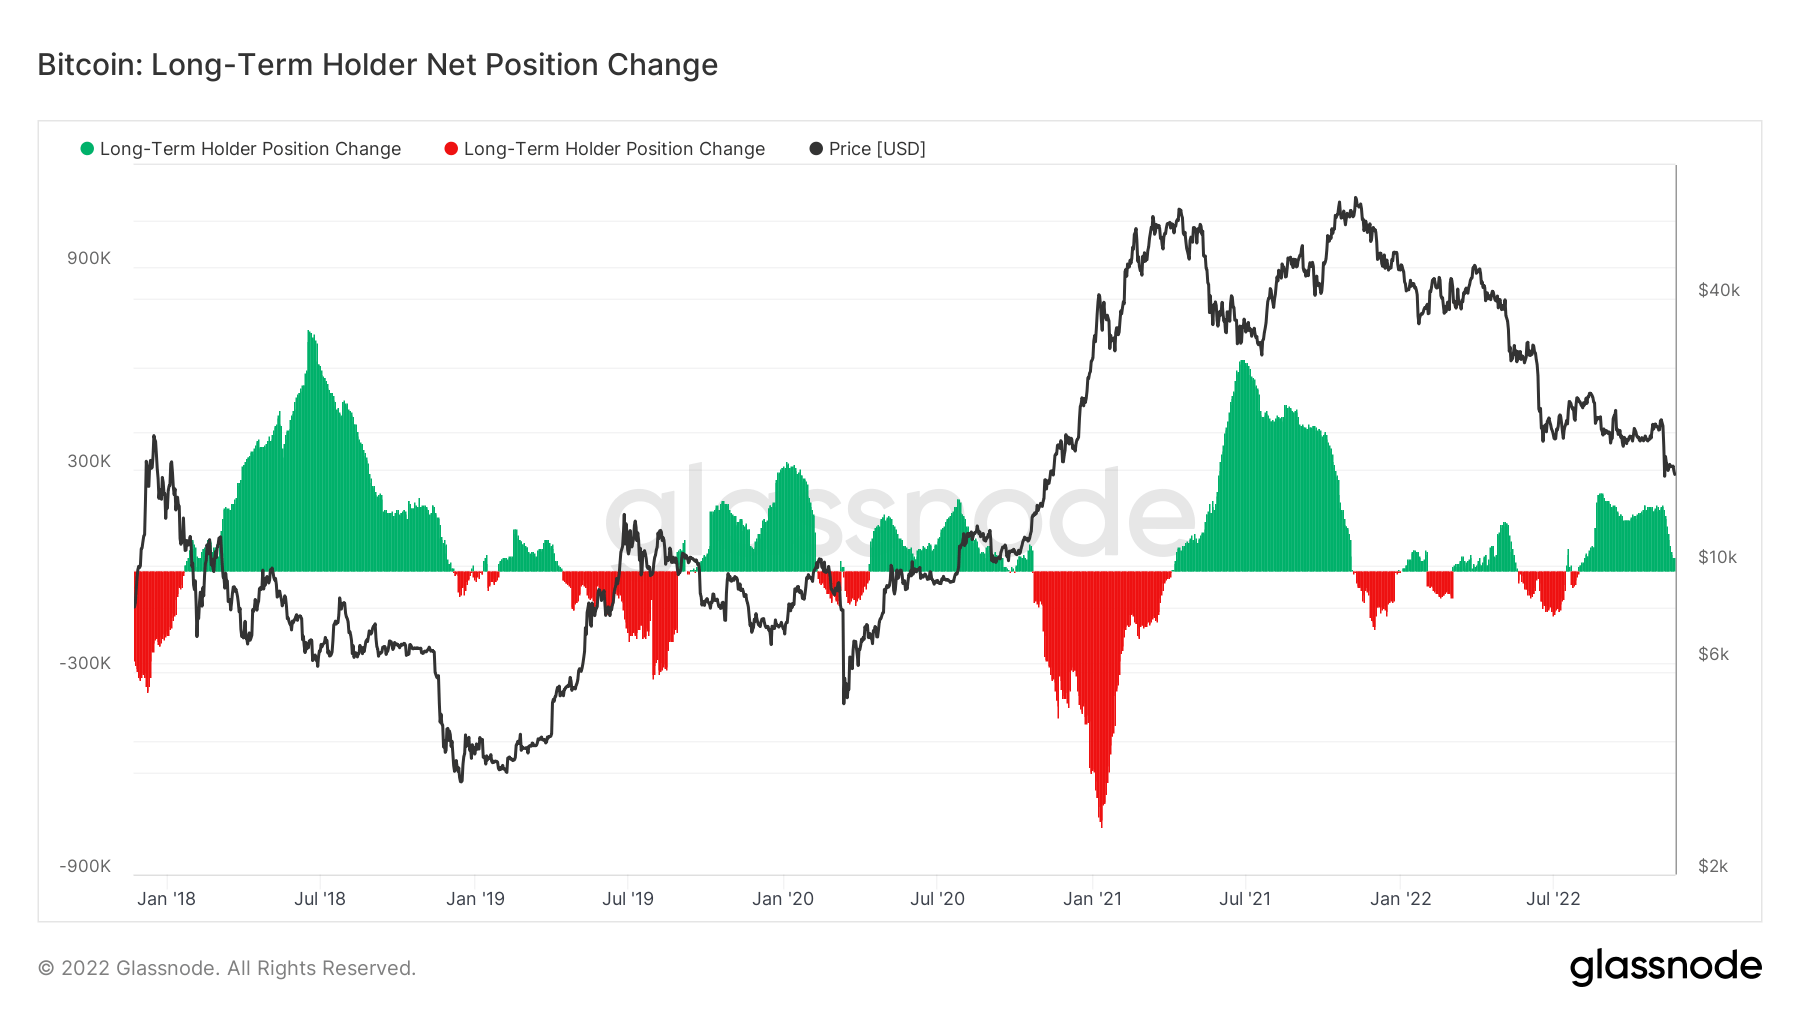 Long-term holder net position change